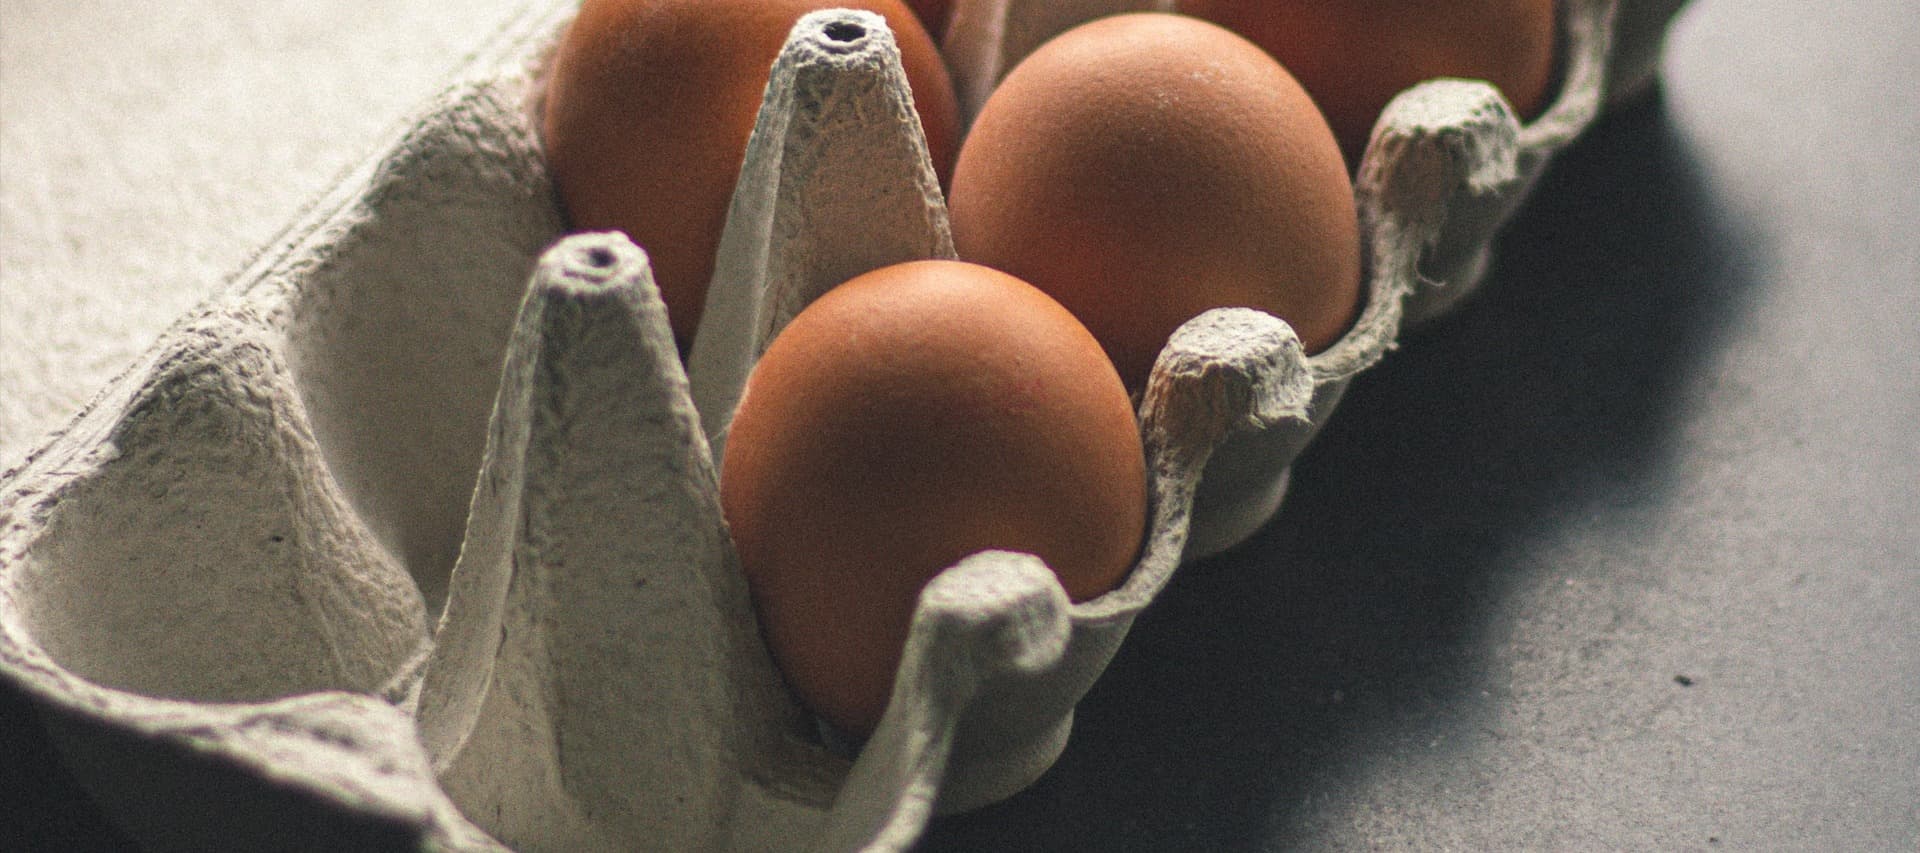 Фото новости: "Яйца в некоторых регионах начали продавать поштучно"